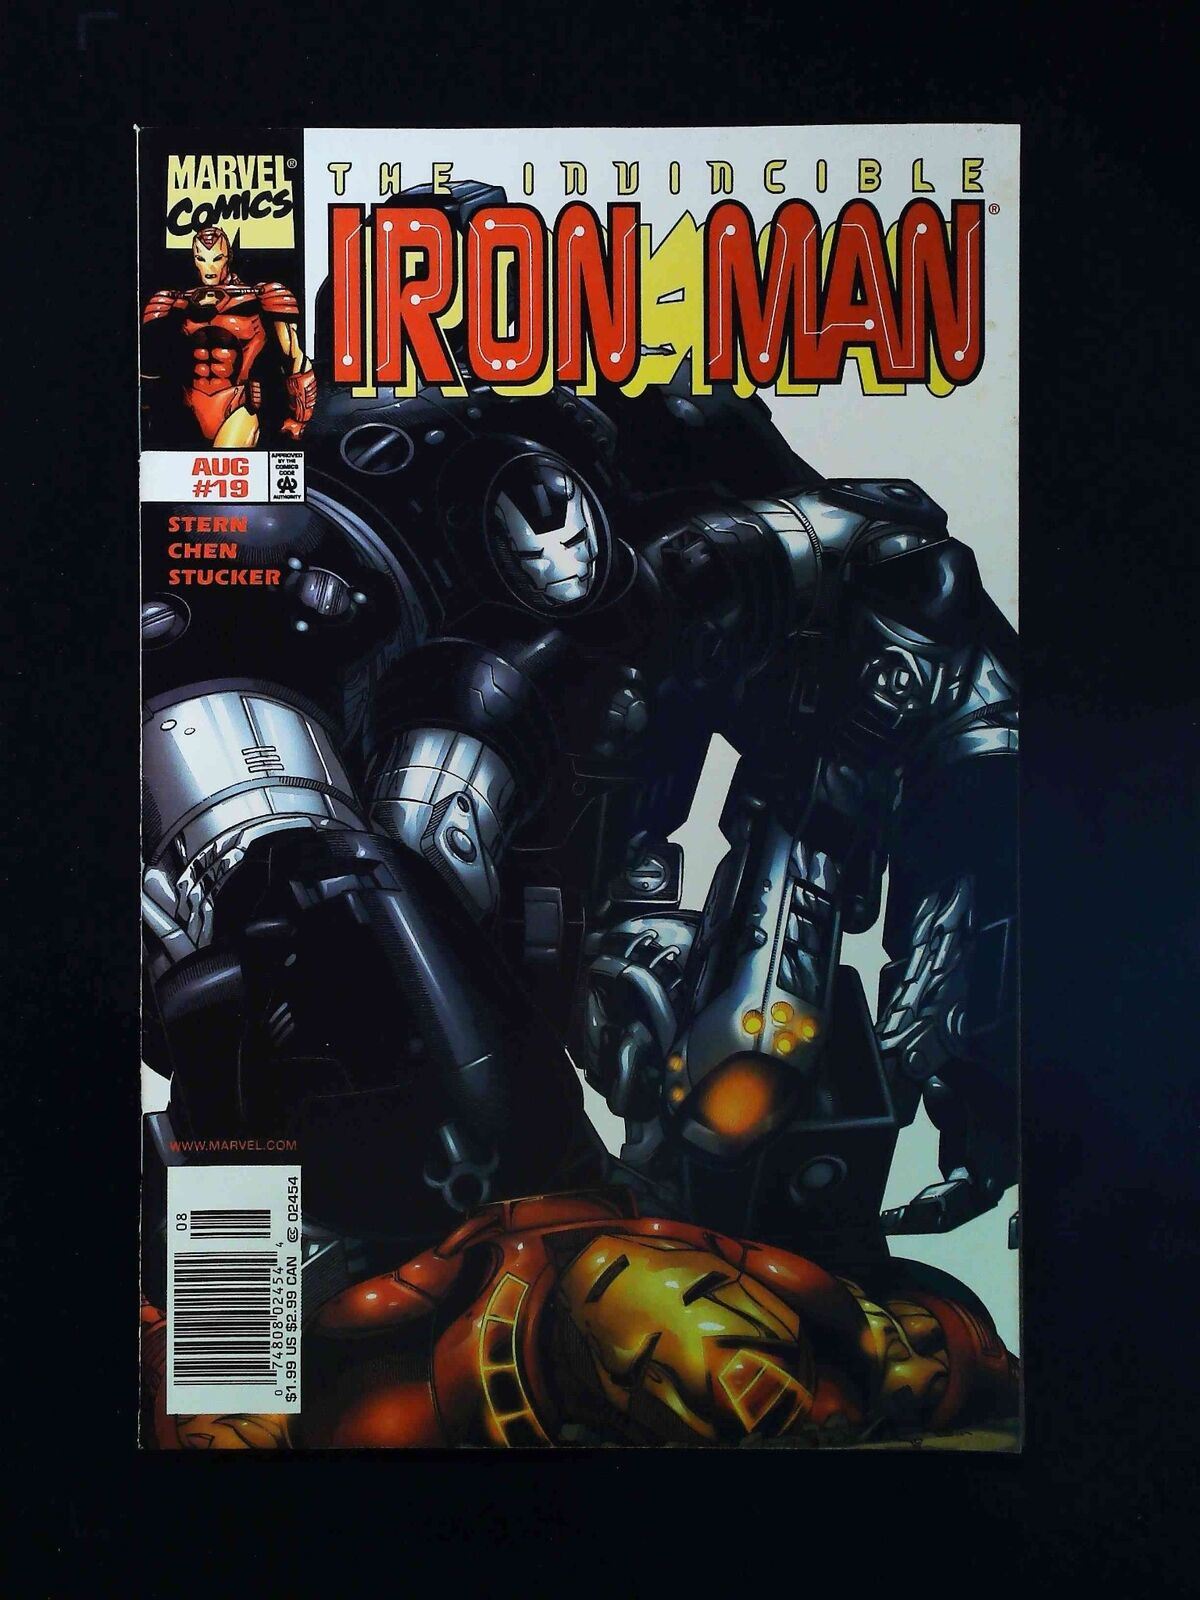 Iron Man #19 (3Rd Series) Marvel Comics 1999 Vf+ Newsstand